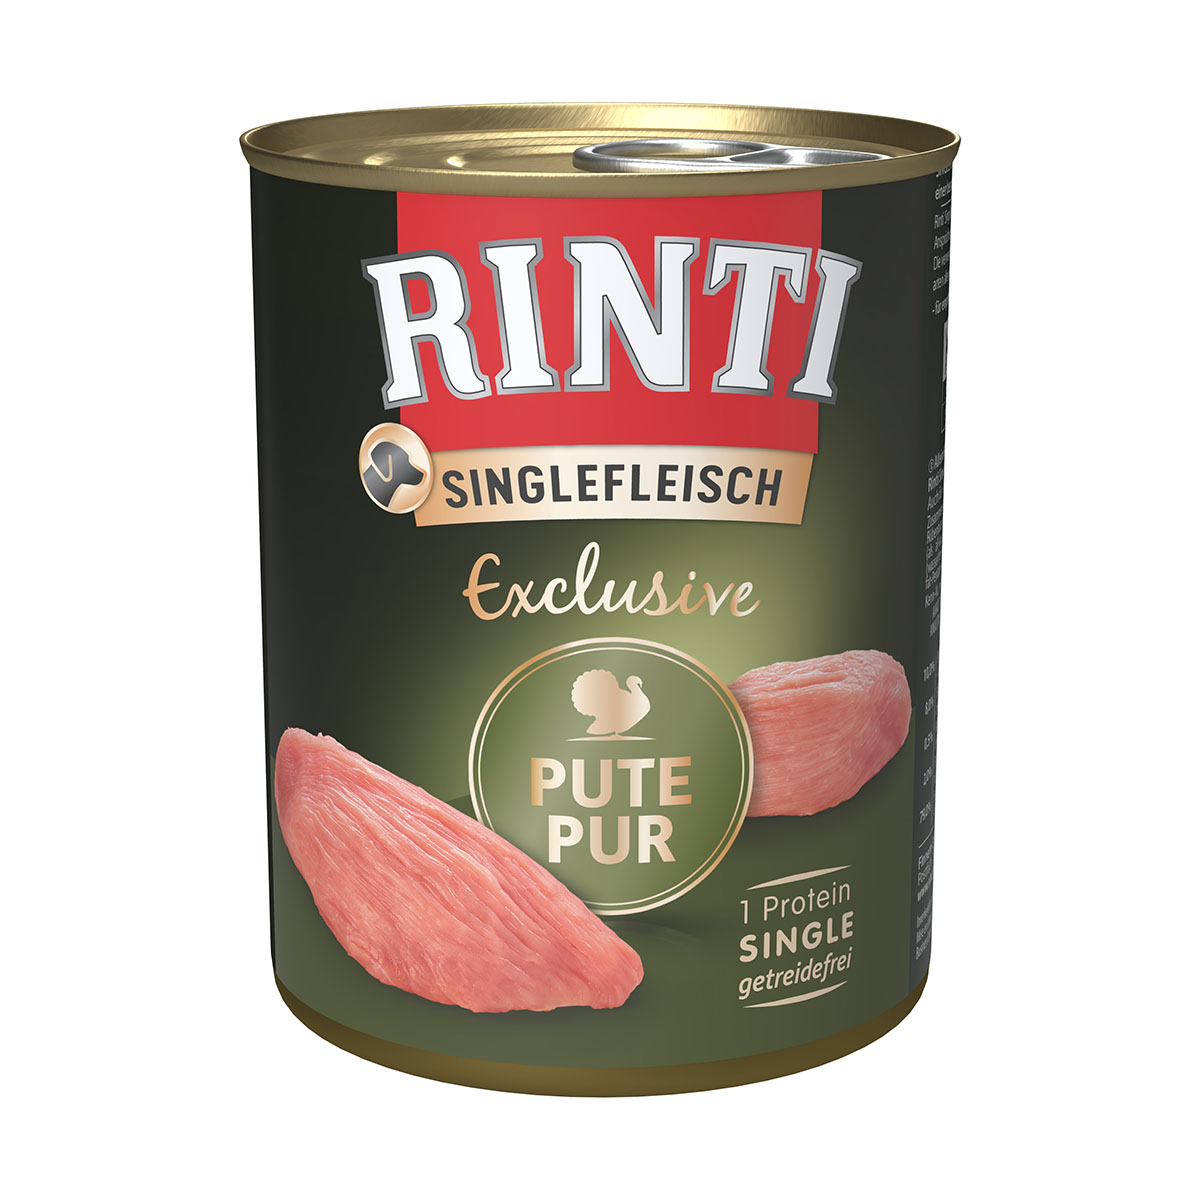 Rinti Singlefleisch Exclusive Pute pur 12x800g von Rinti